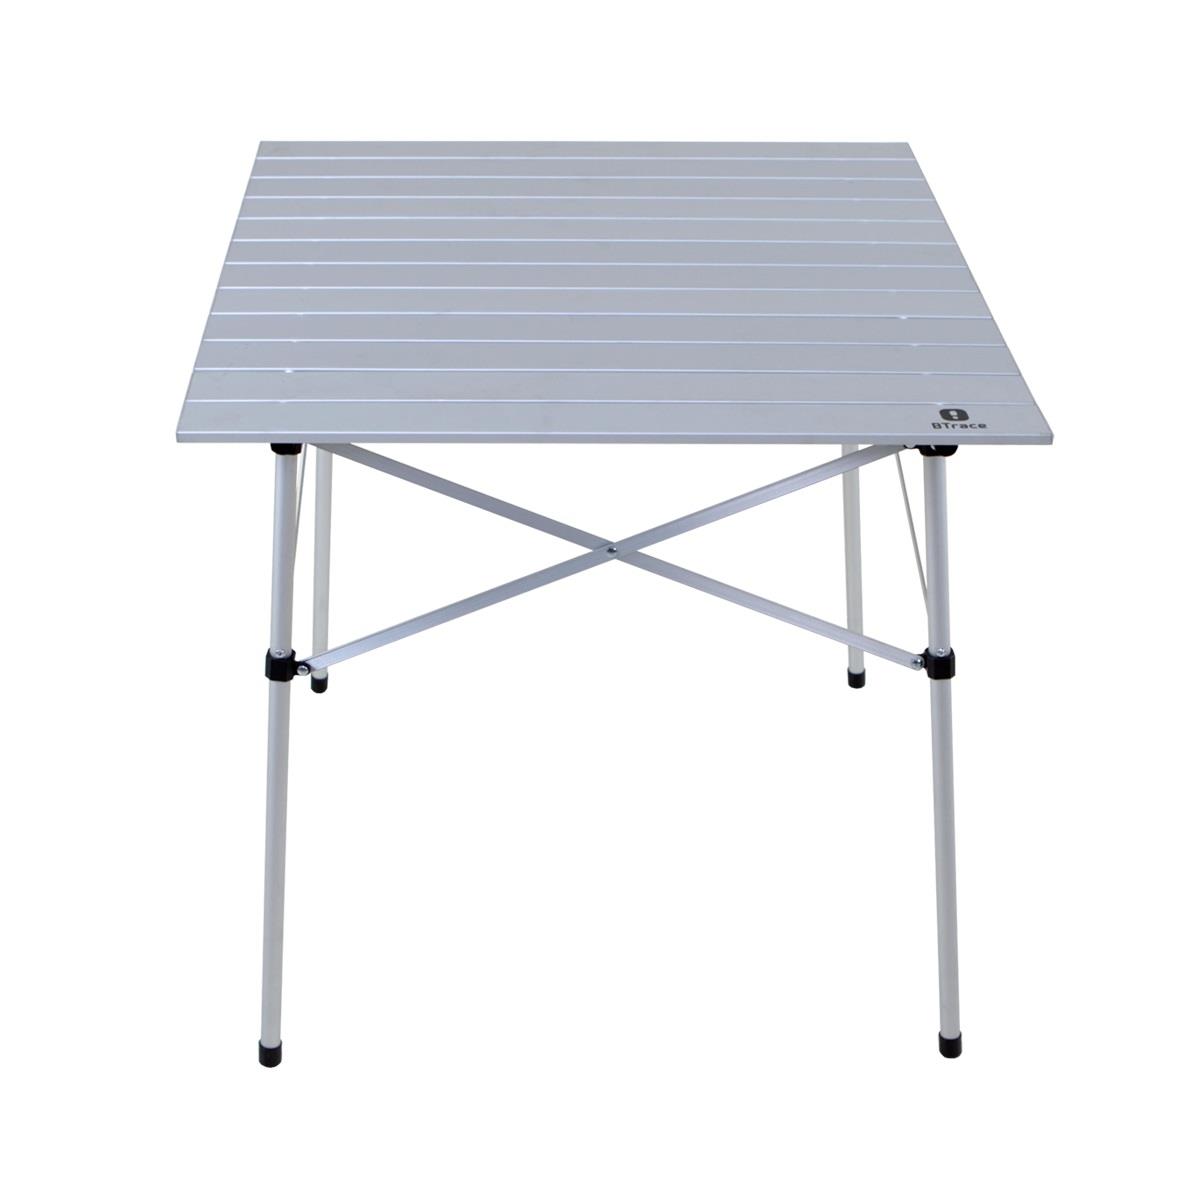 Стол складной Qick table 70 (F0500) BTrace алюминиевый координатный стол технореал